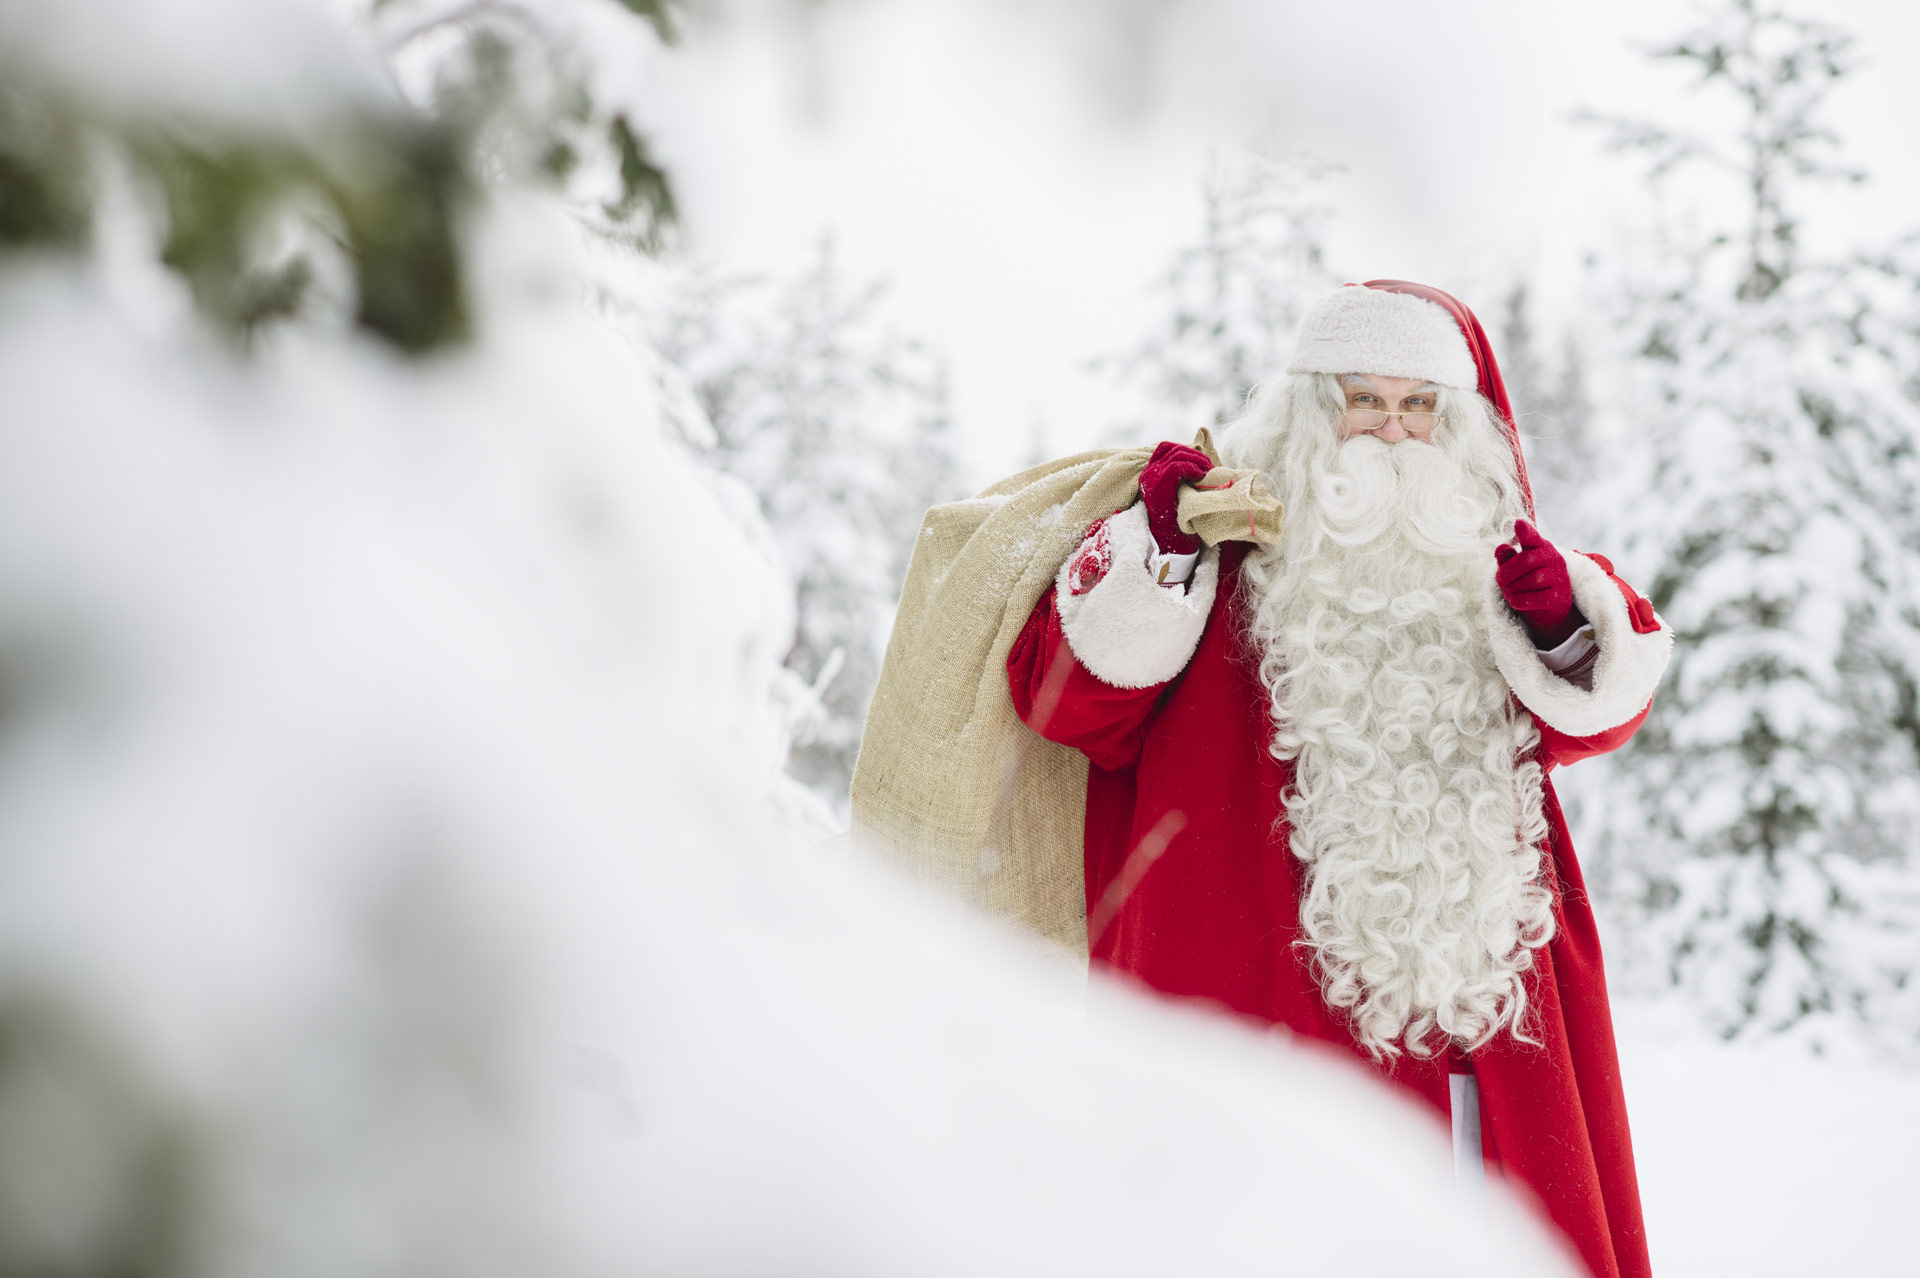 Lapland Home of Santa Claus Visit Finnish Lapland